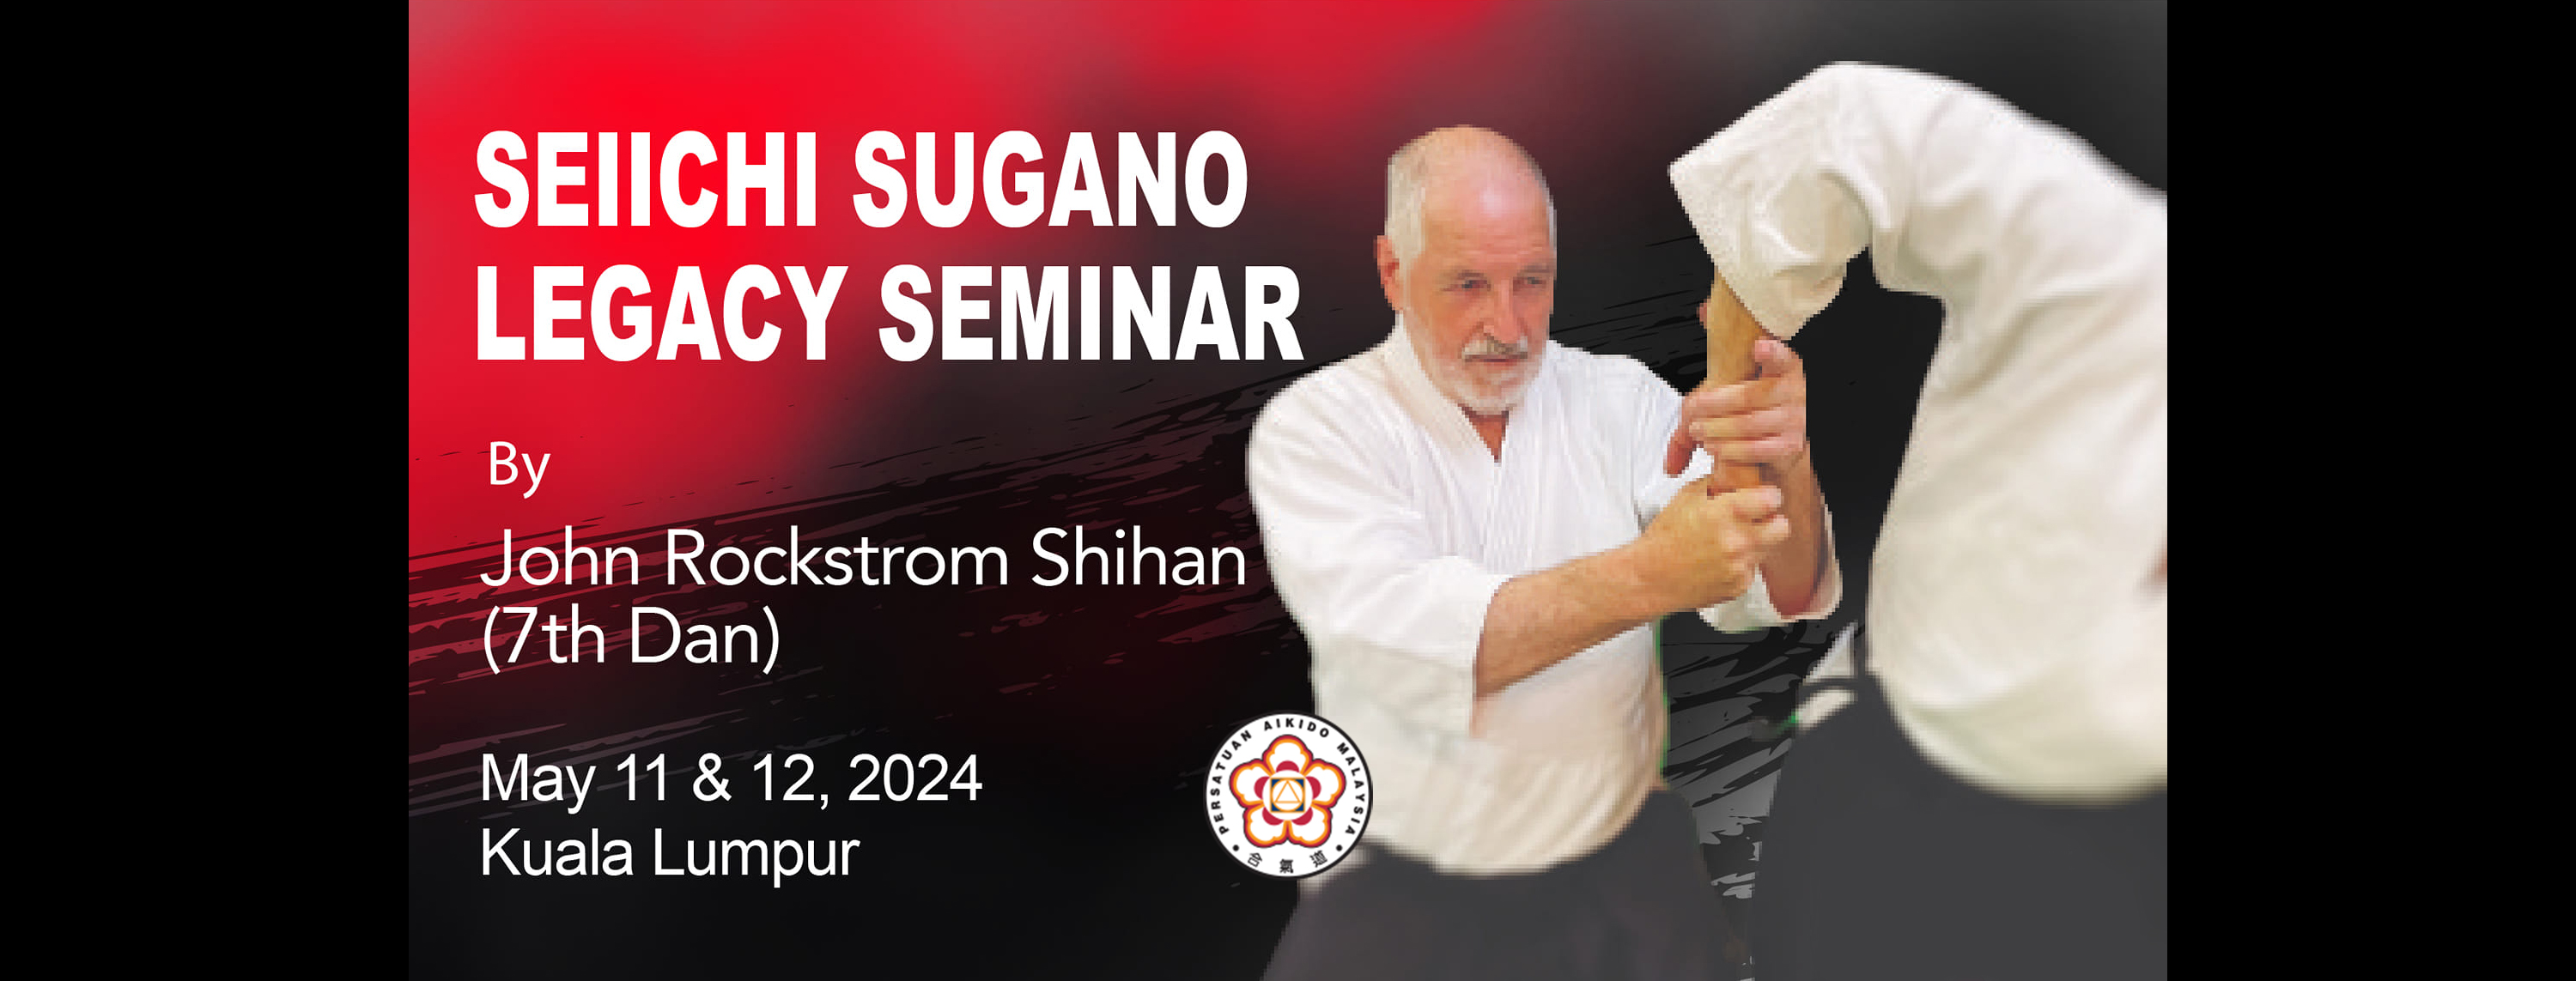 Seiichi Sugano Legacy Seminar By John Rockstrom Shihan